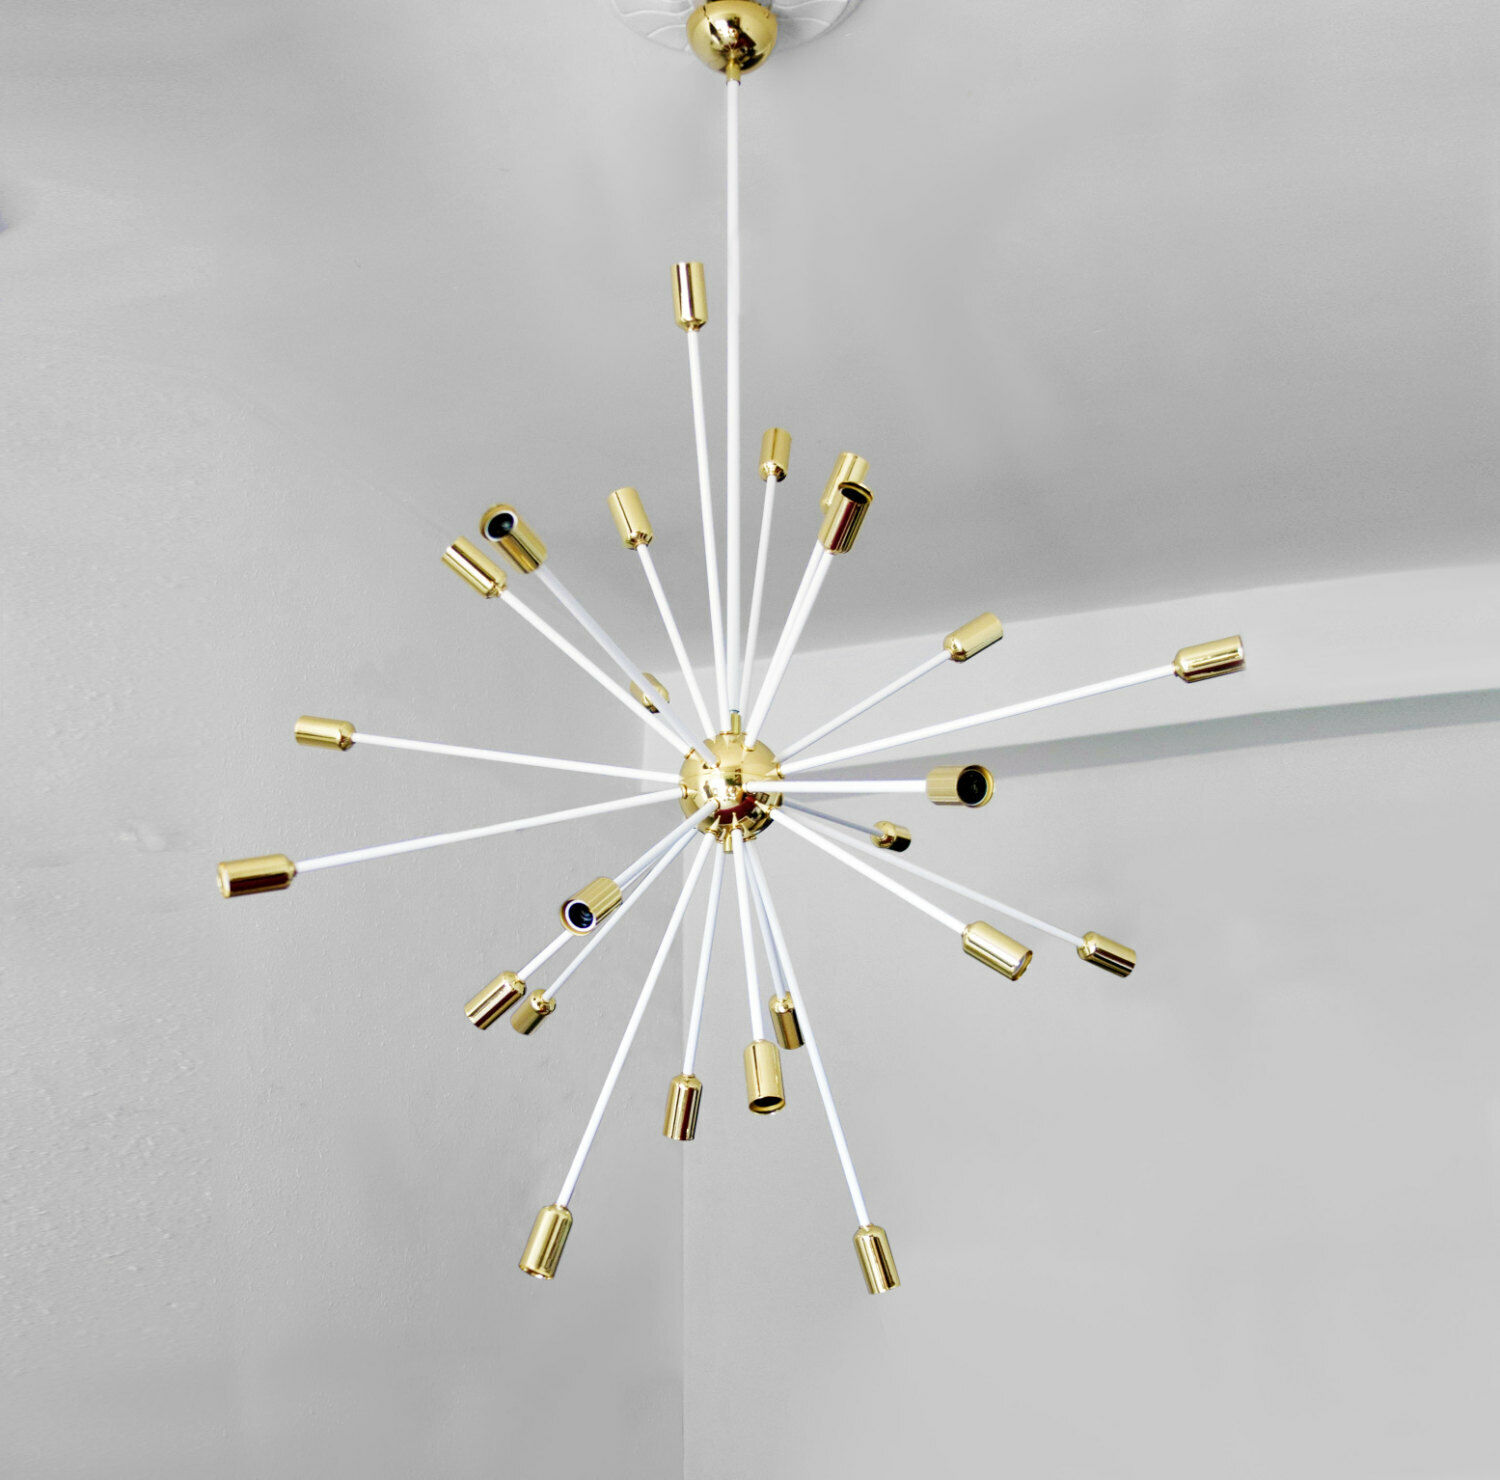 Sputnik Chandeliers Mid Century Modern Brass Industrial Lamps Lighting Fixture